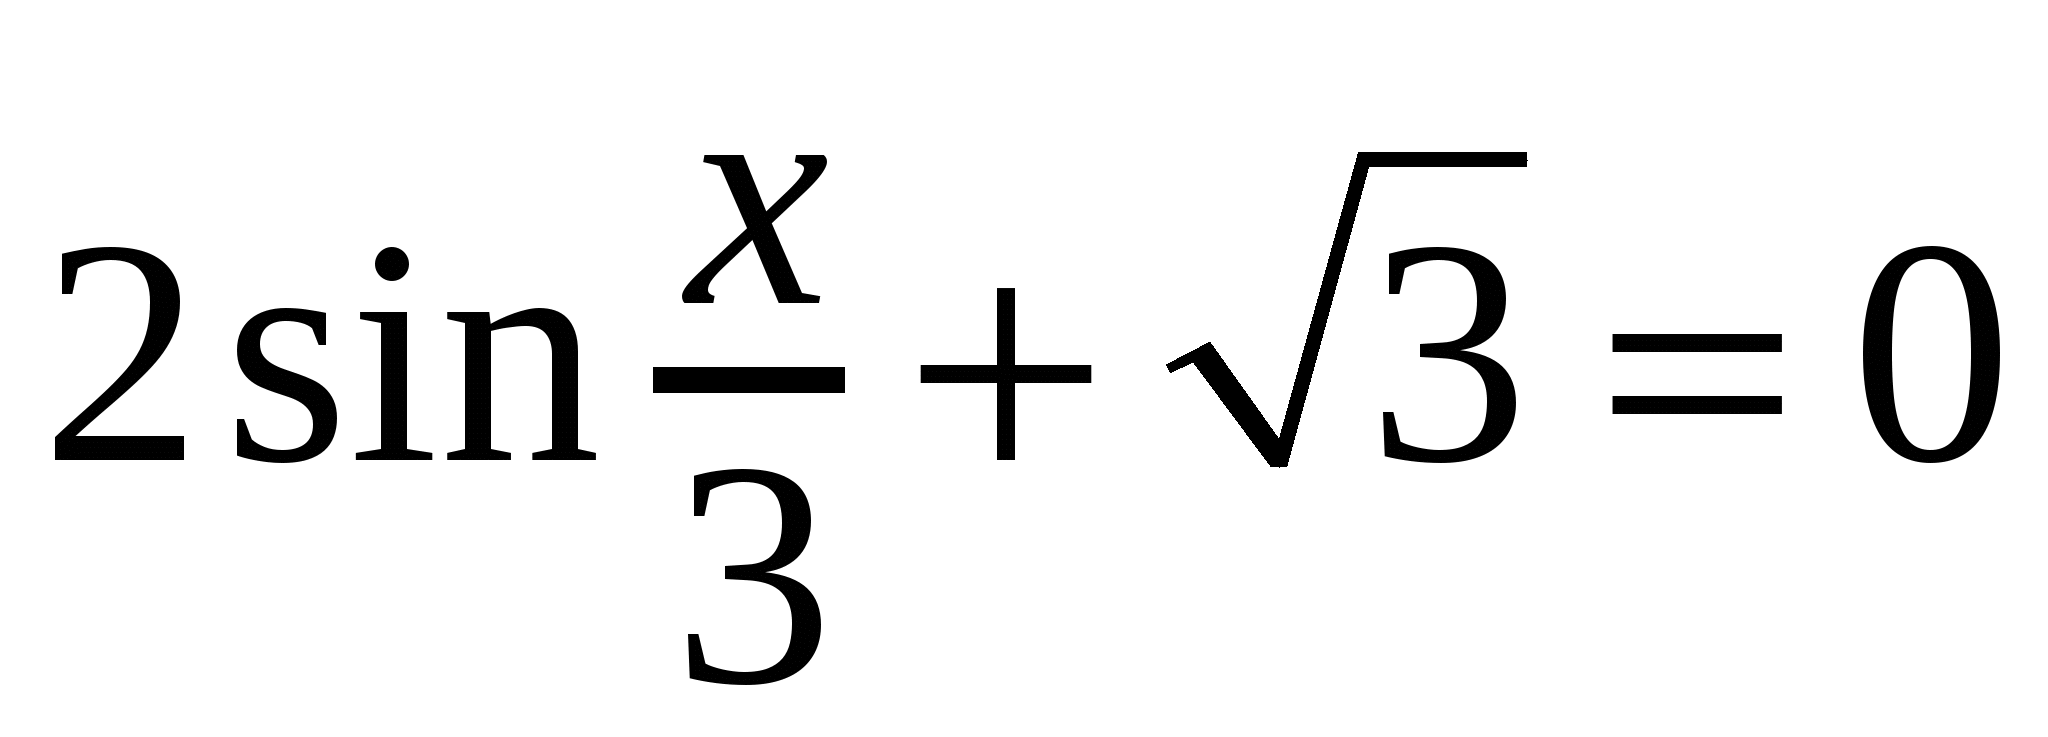 Самостоятельная работа по теме: Решение тригонометрических уравнений (10 класс)